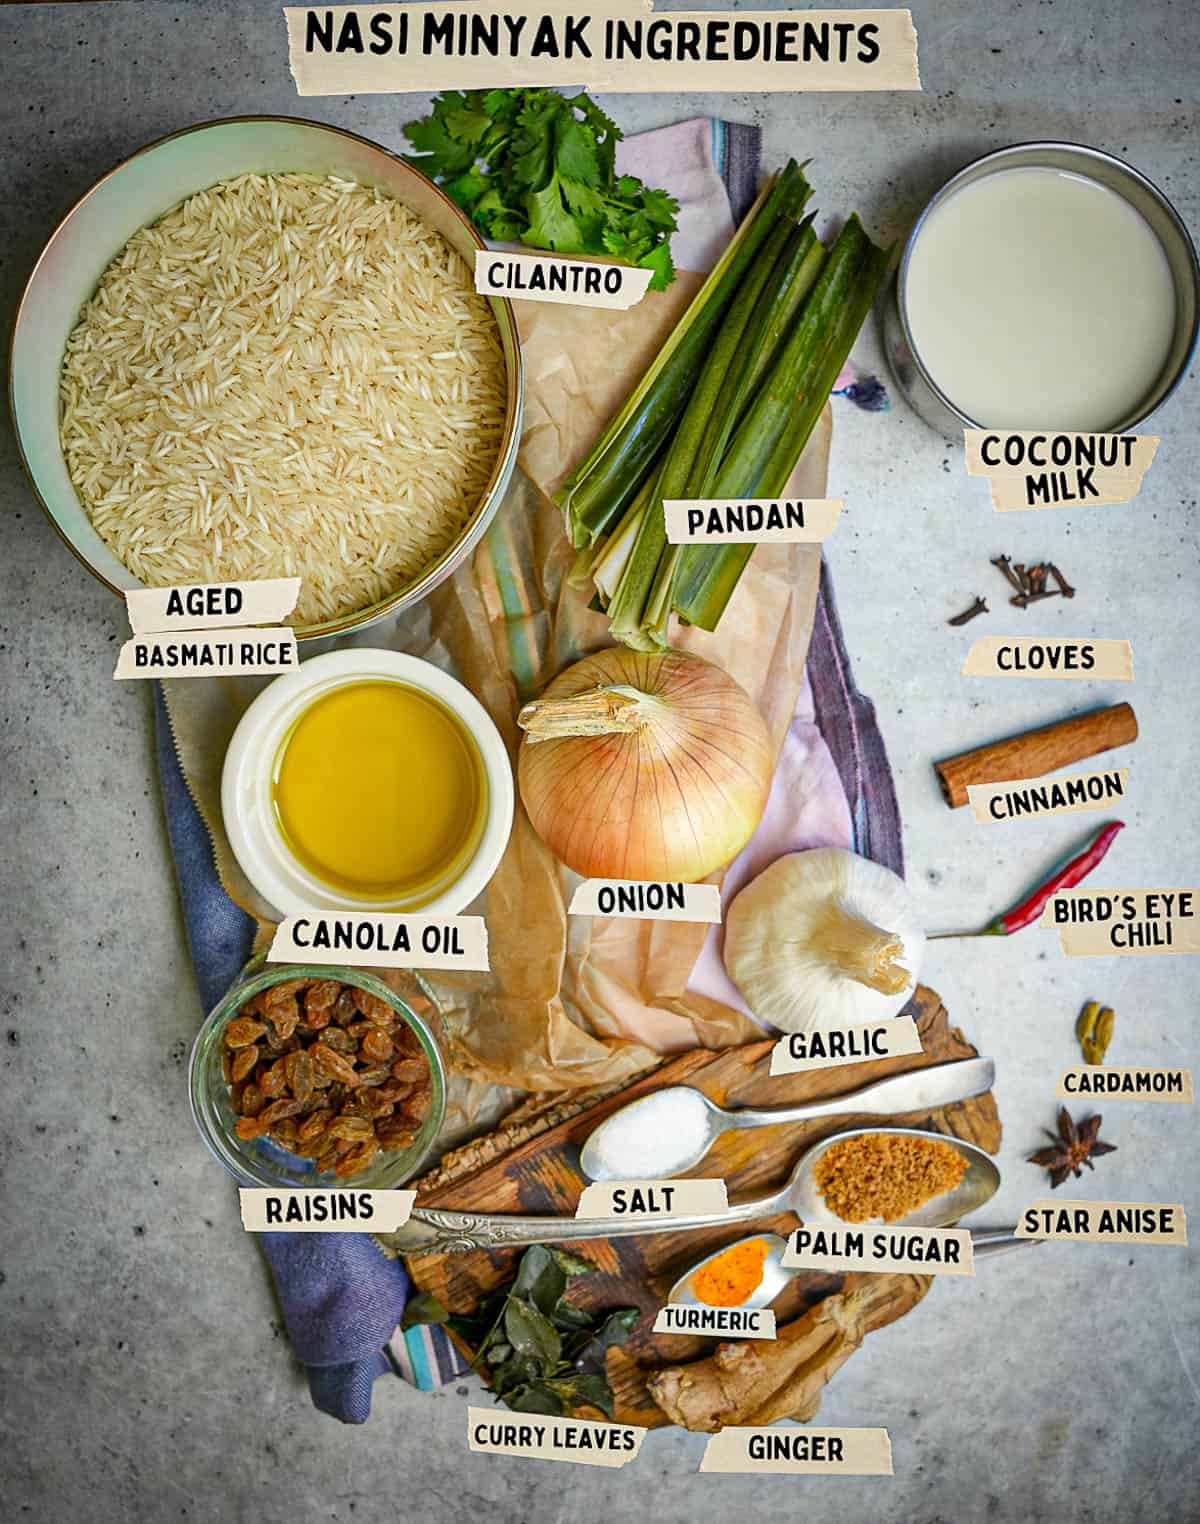 Ingredients for nasi minyak.